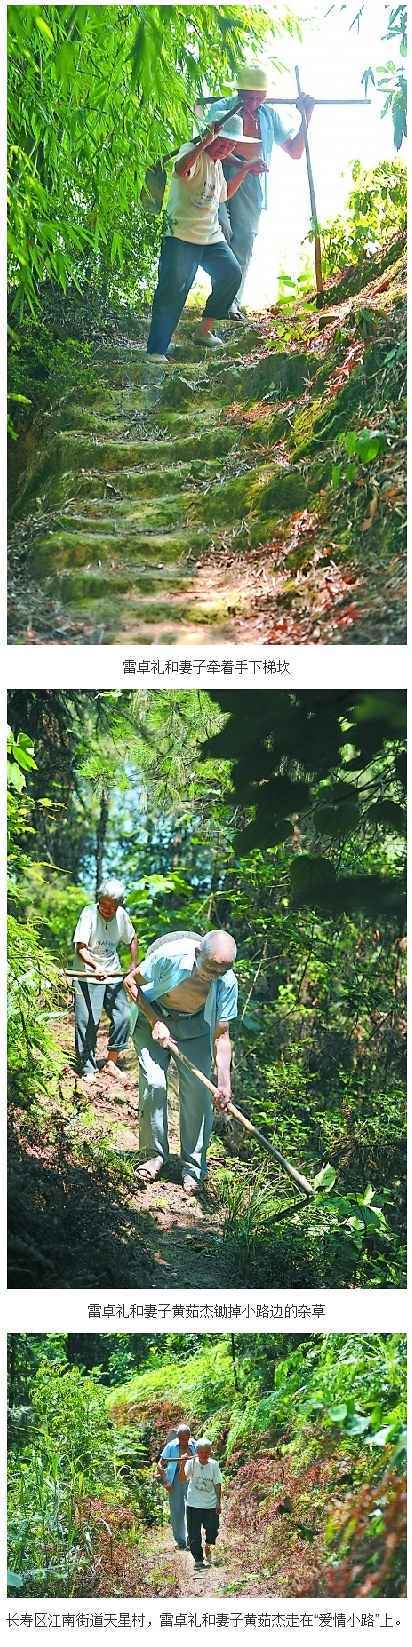 相伴山中53年 老汉为妻开出5公里“爱情路”